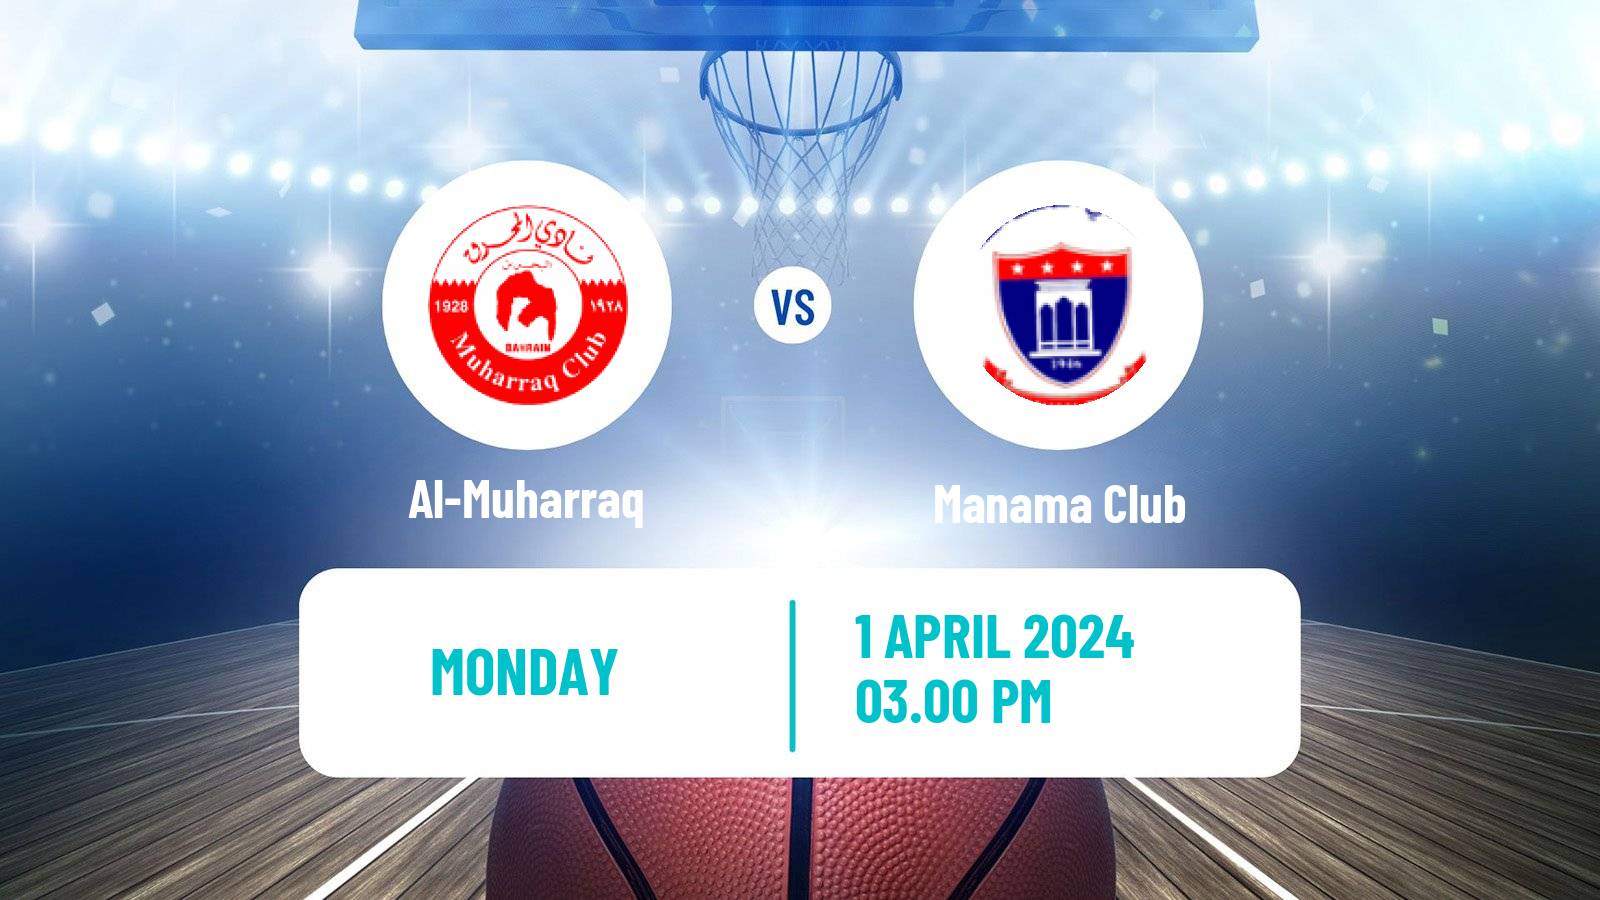 Basketball WASL Basketball Al-Muharraq - Manama Club